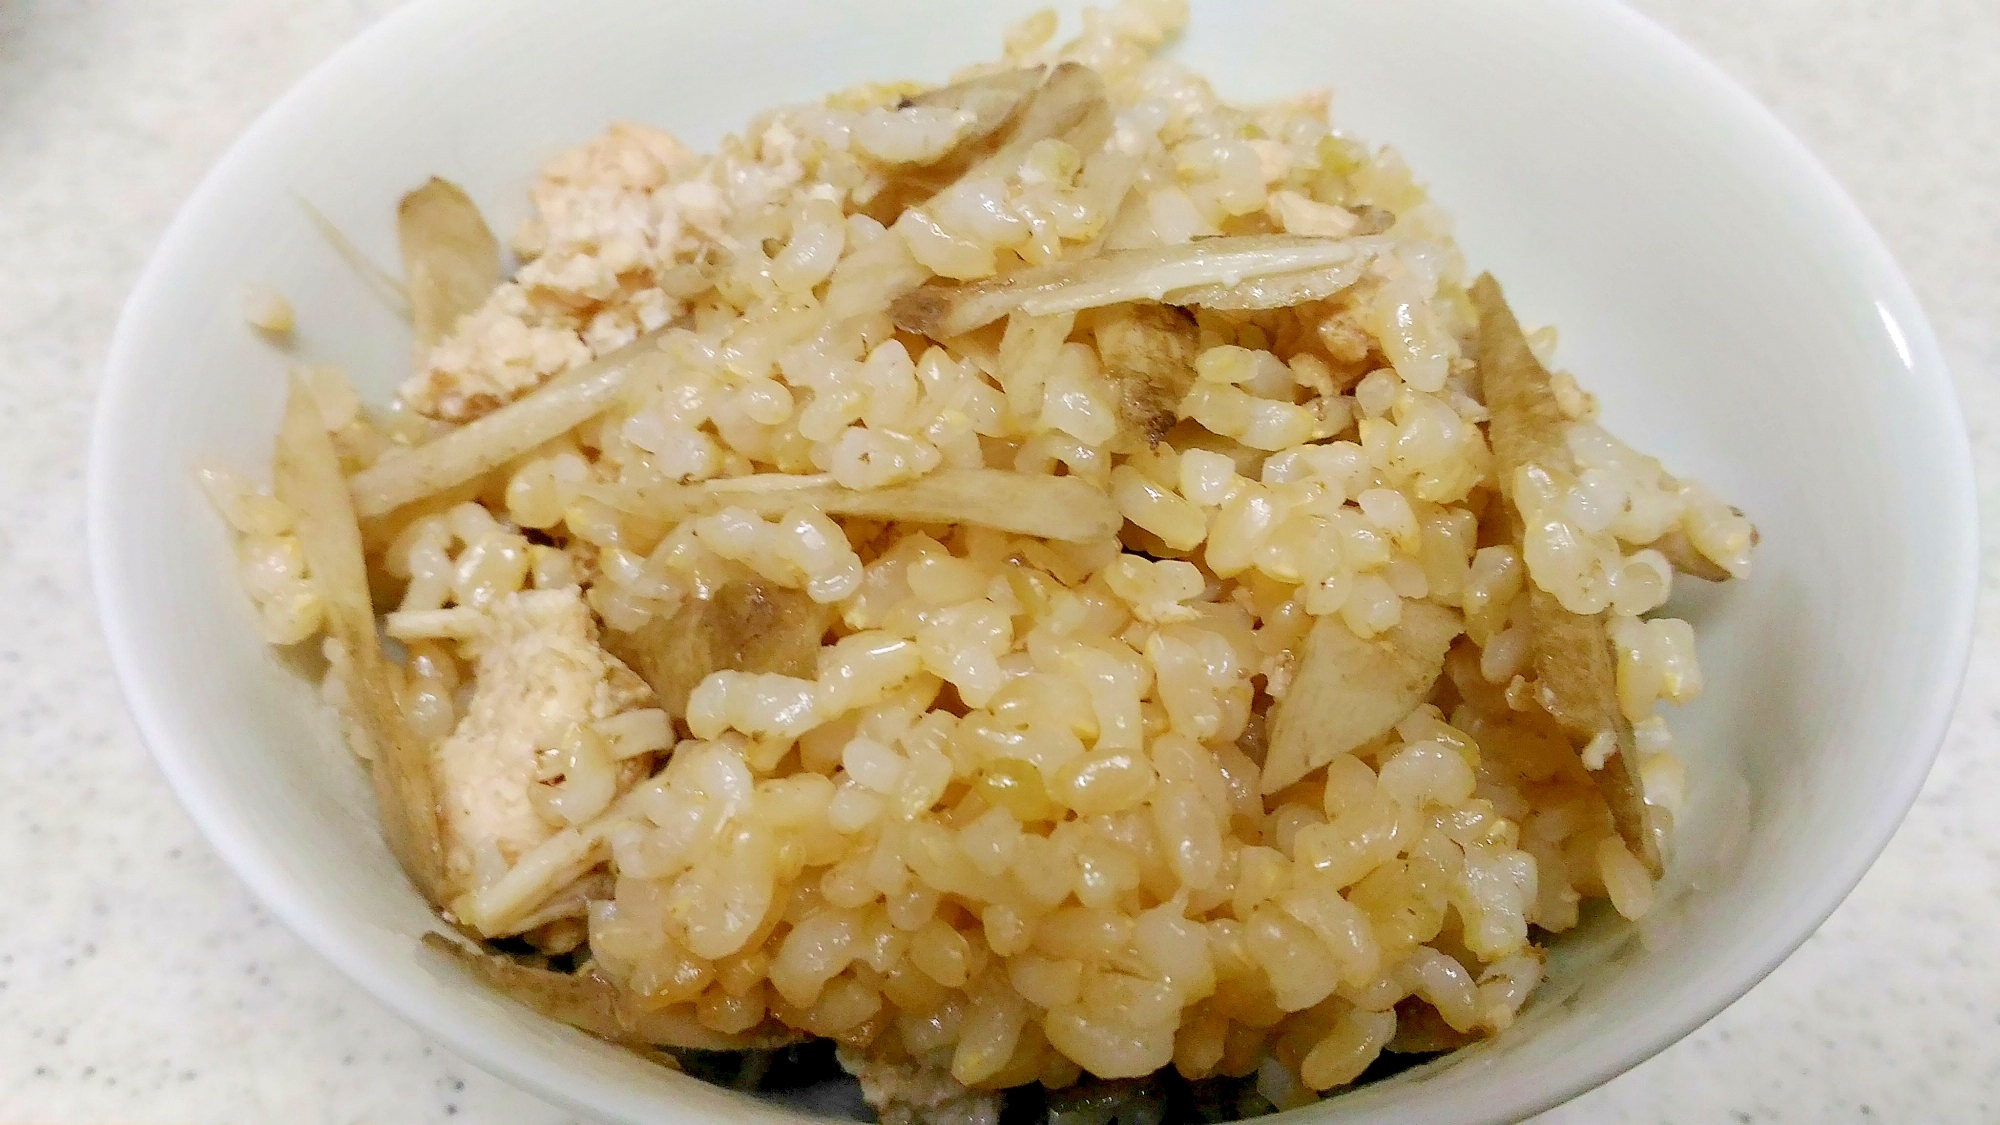 鶏挽き肉と牛蒡、エノキの玄米炊き込みご飯